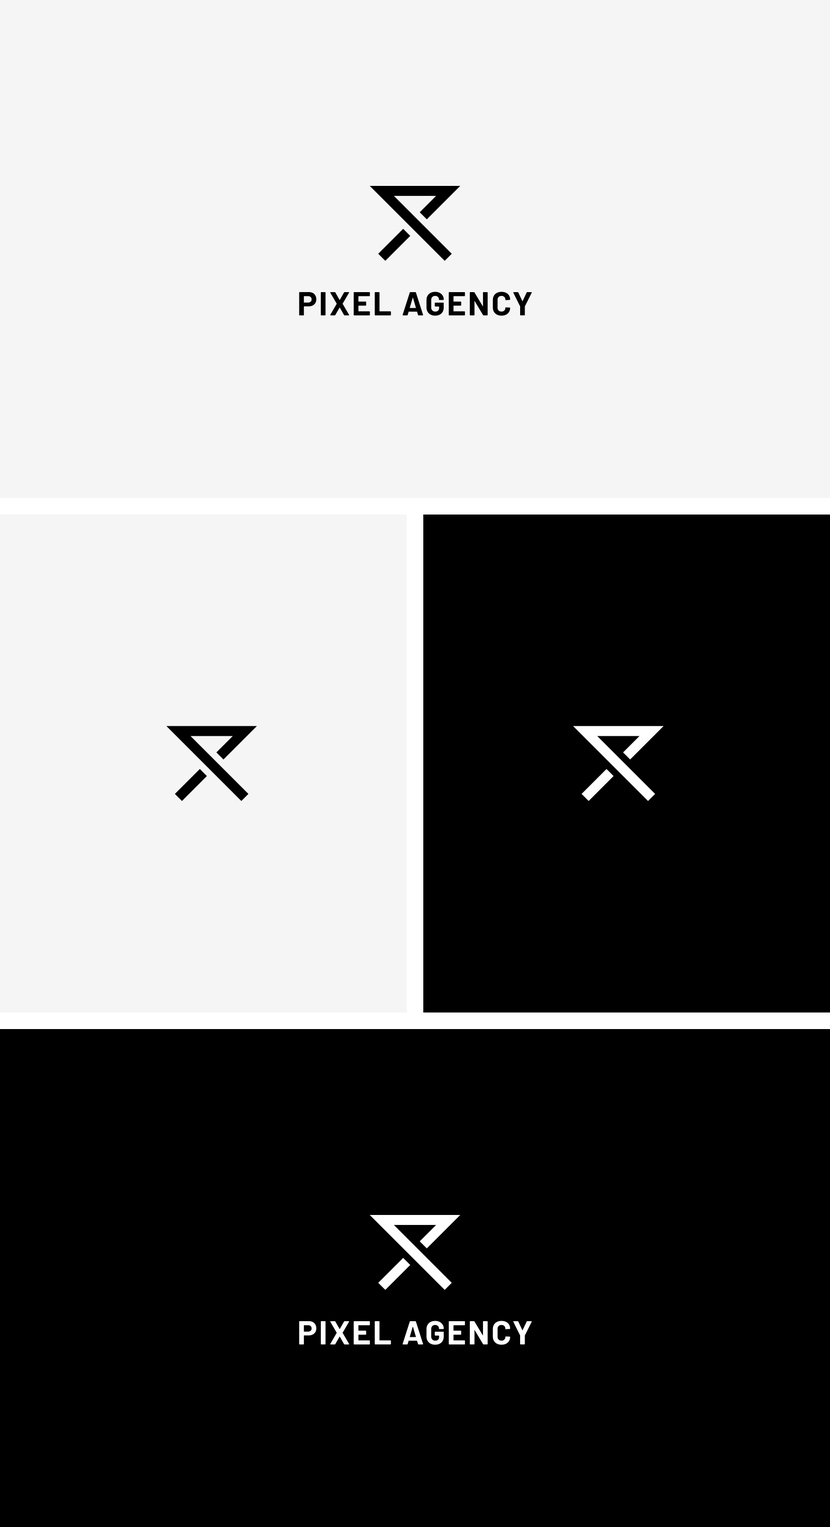 Знак состоит из двух букв "P" и "X". В образе угадываются песчаные часы, символизируя время затраченное на загрузку интернет-страниц. - Логотип для веб-студии pixel agency